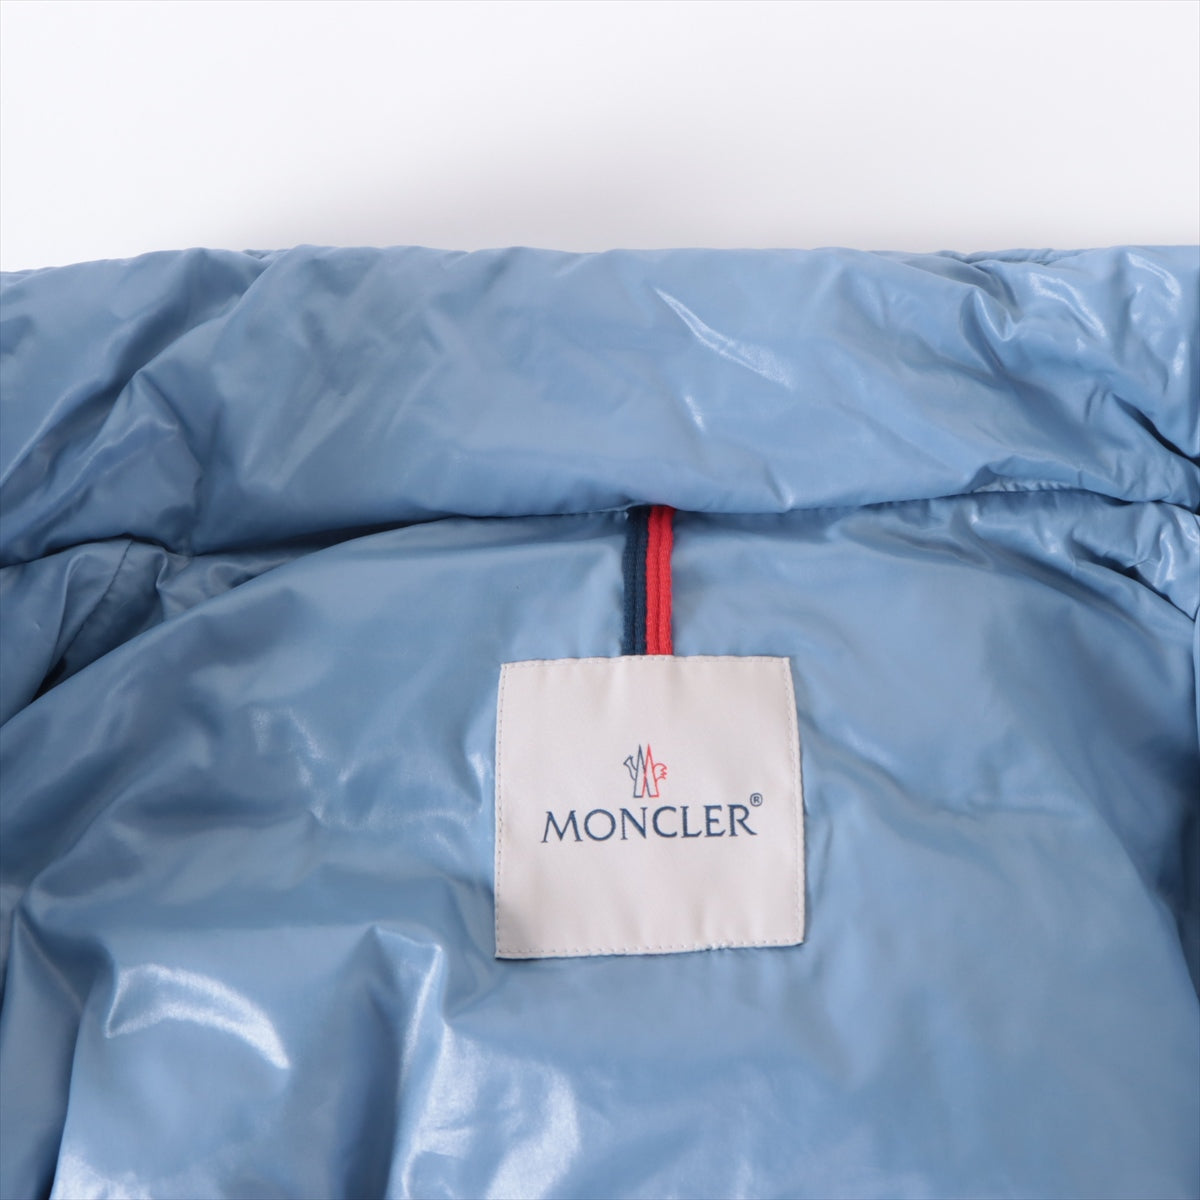 モンクレール CUVELLIER 21年 ポリエステル×ナイロン ダウンジャケット 5 メンズ ブルー  タグカットあり